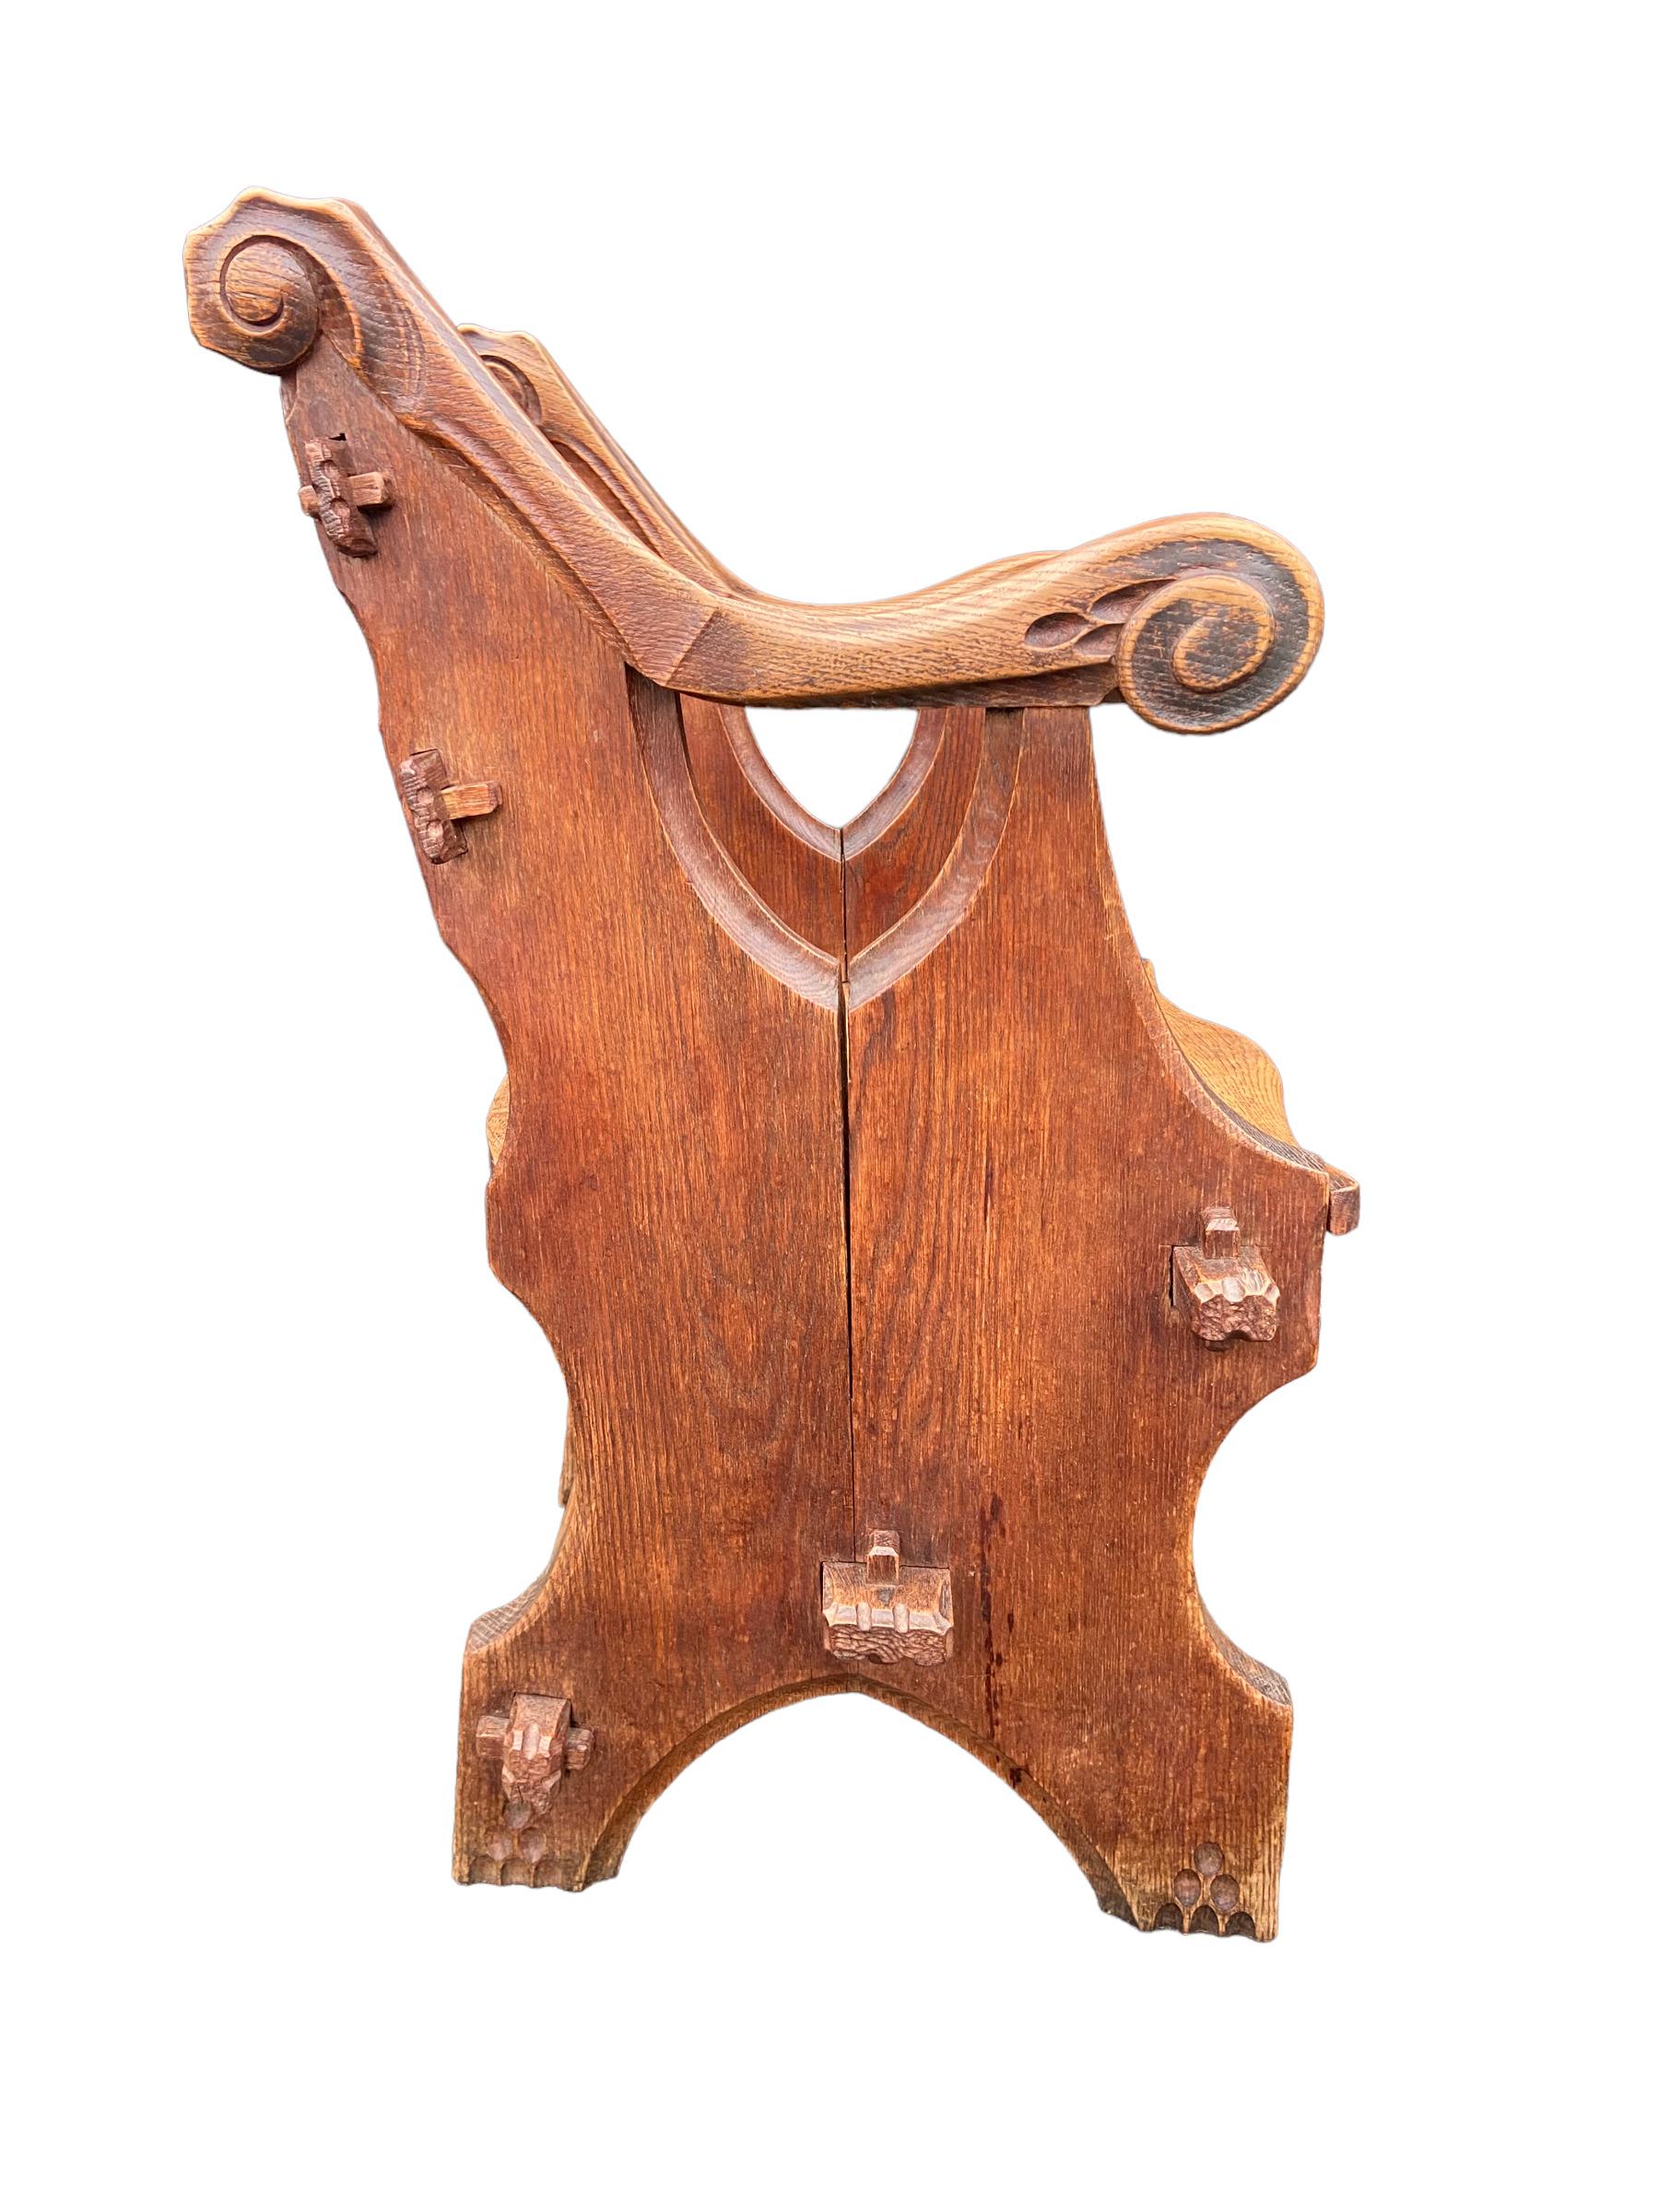 Chaise sculpturale en bois de chêne fabriquée aux Pays-Bas vers 1930. Cette lourde pièce de design hollandais est en bon état mais présente des signes d'ancienneté.

Dimensions : hauteur d'assise 45 cm, hauteur 90 cm, largeur 66 cm, profondeur 50